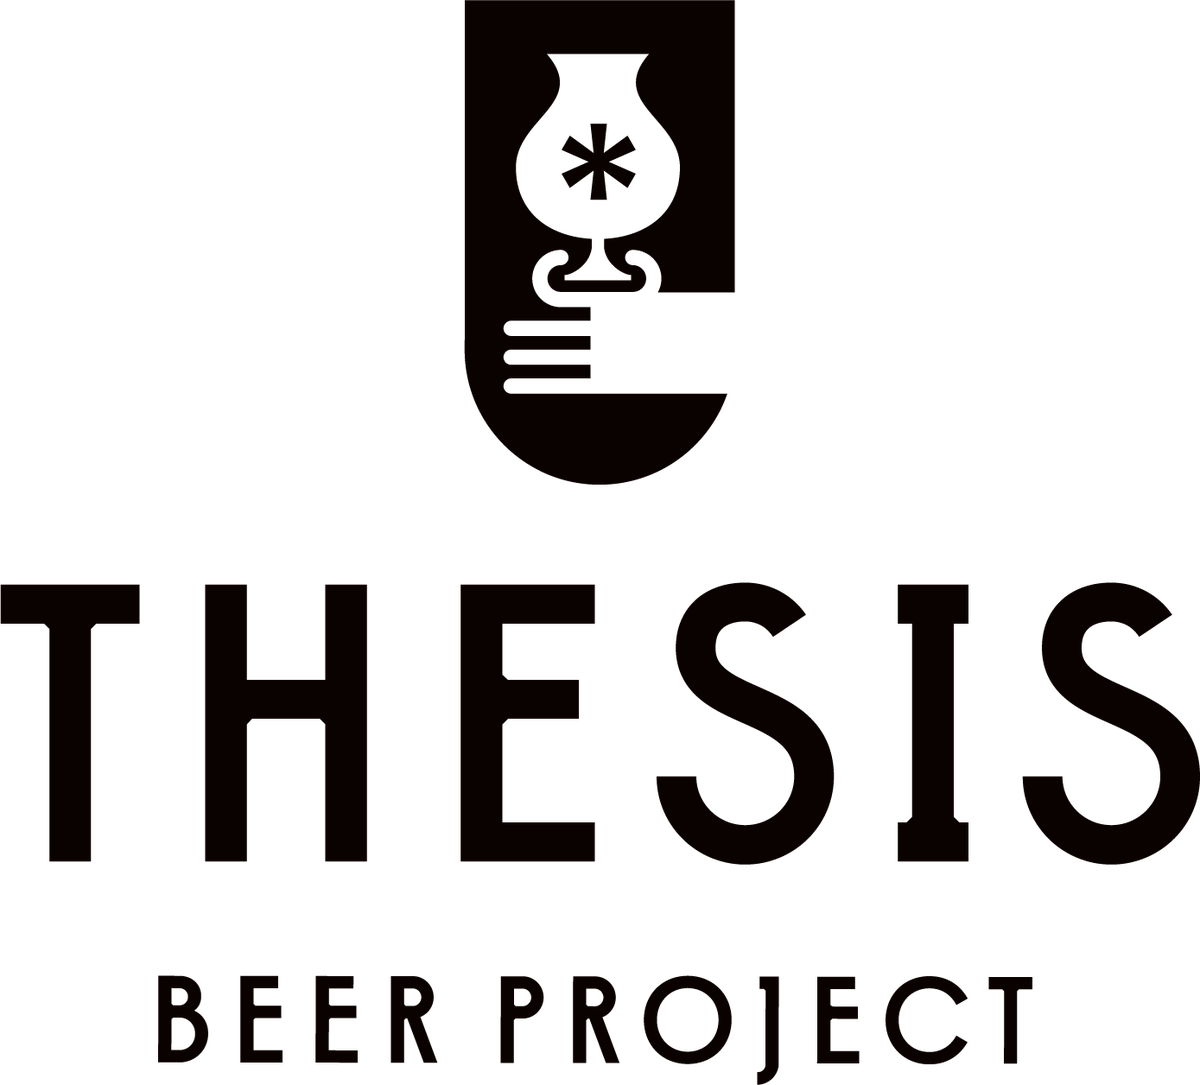 thesis beer facebook